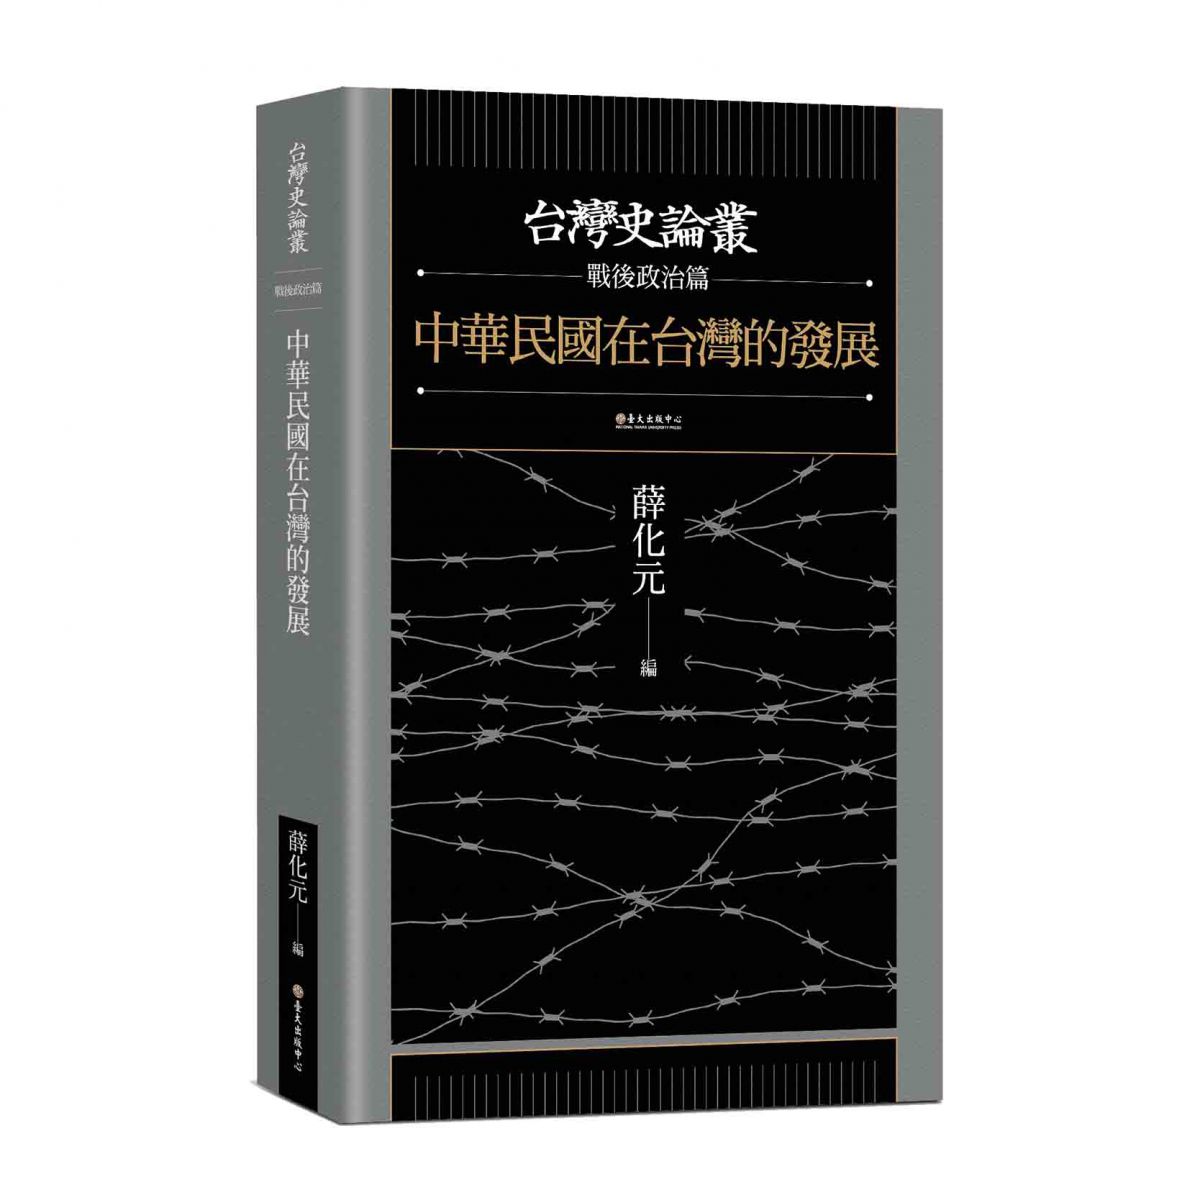 《中華民國在台灣的發展》收入有關戰後台灣政治史研究的論文，探討台灣內部及國際情勢